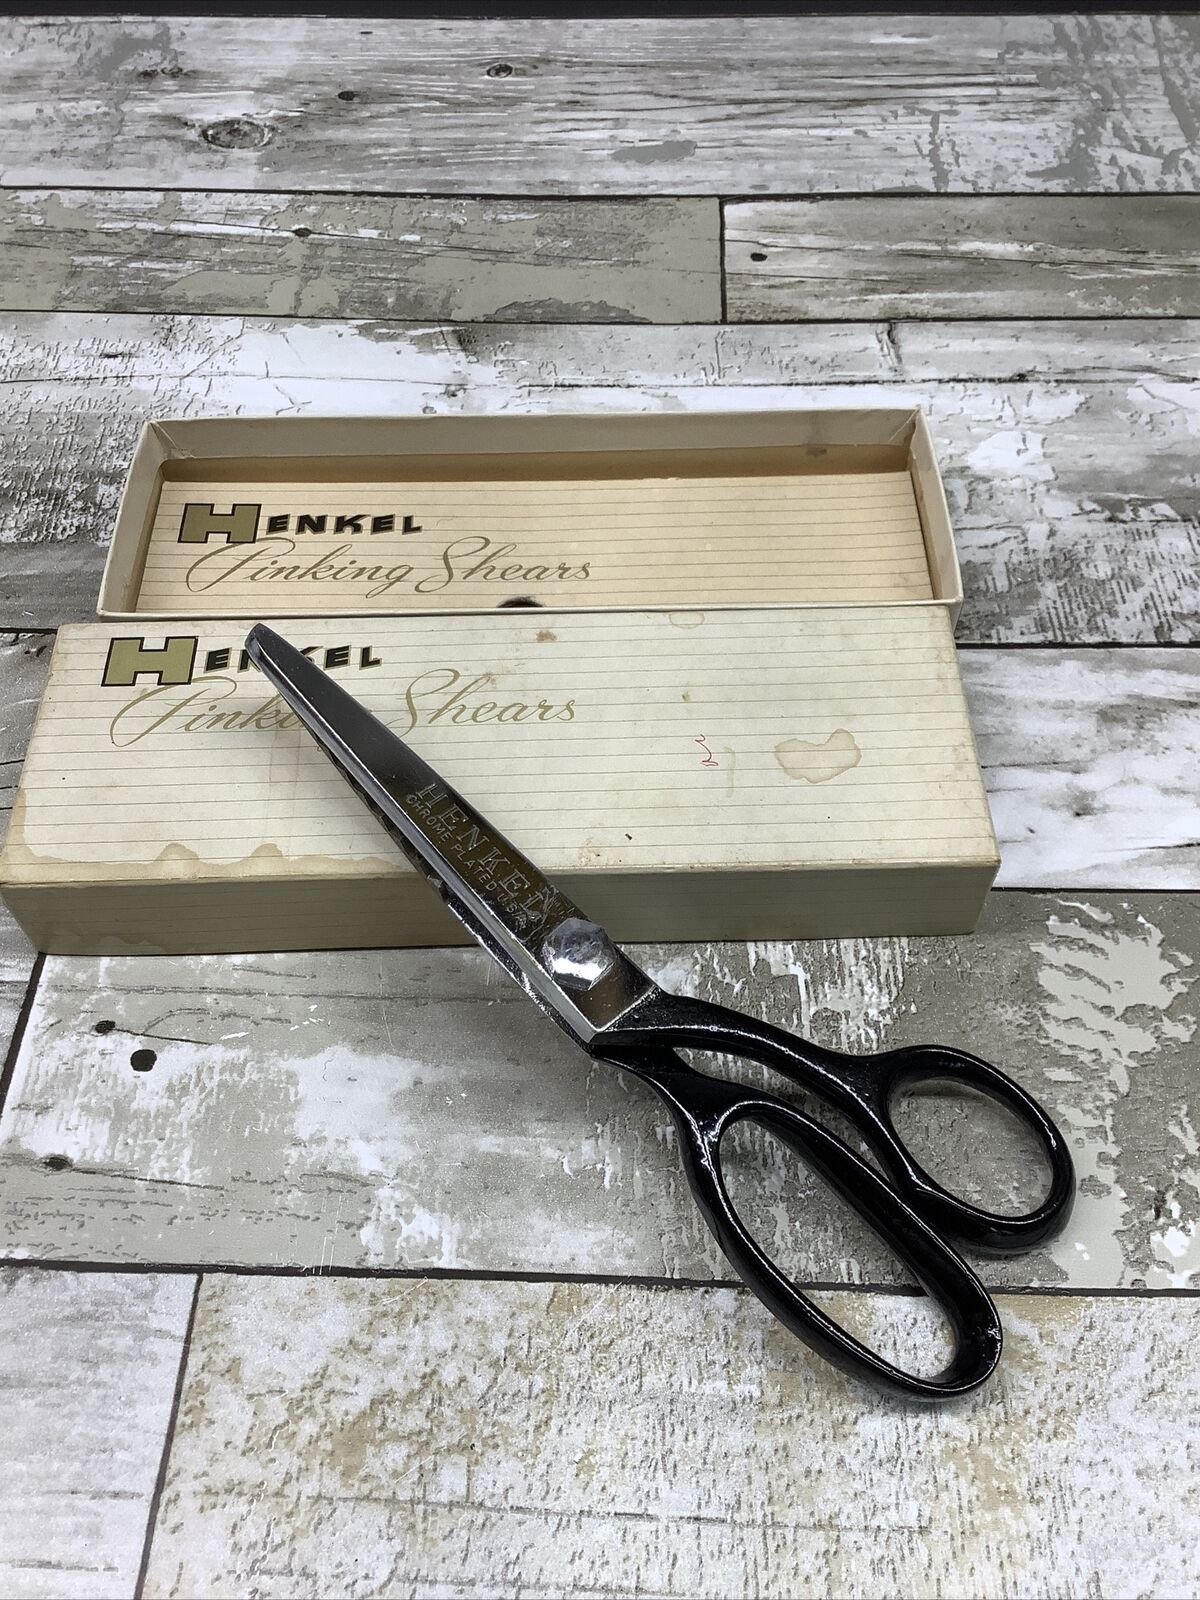 Chrome Plated Henkel Clauss Pinking Shears Scissors 7 1/4 “Length In Box vtg